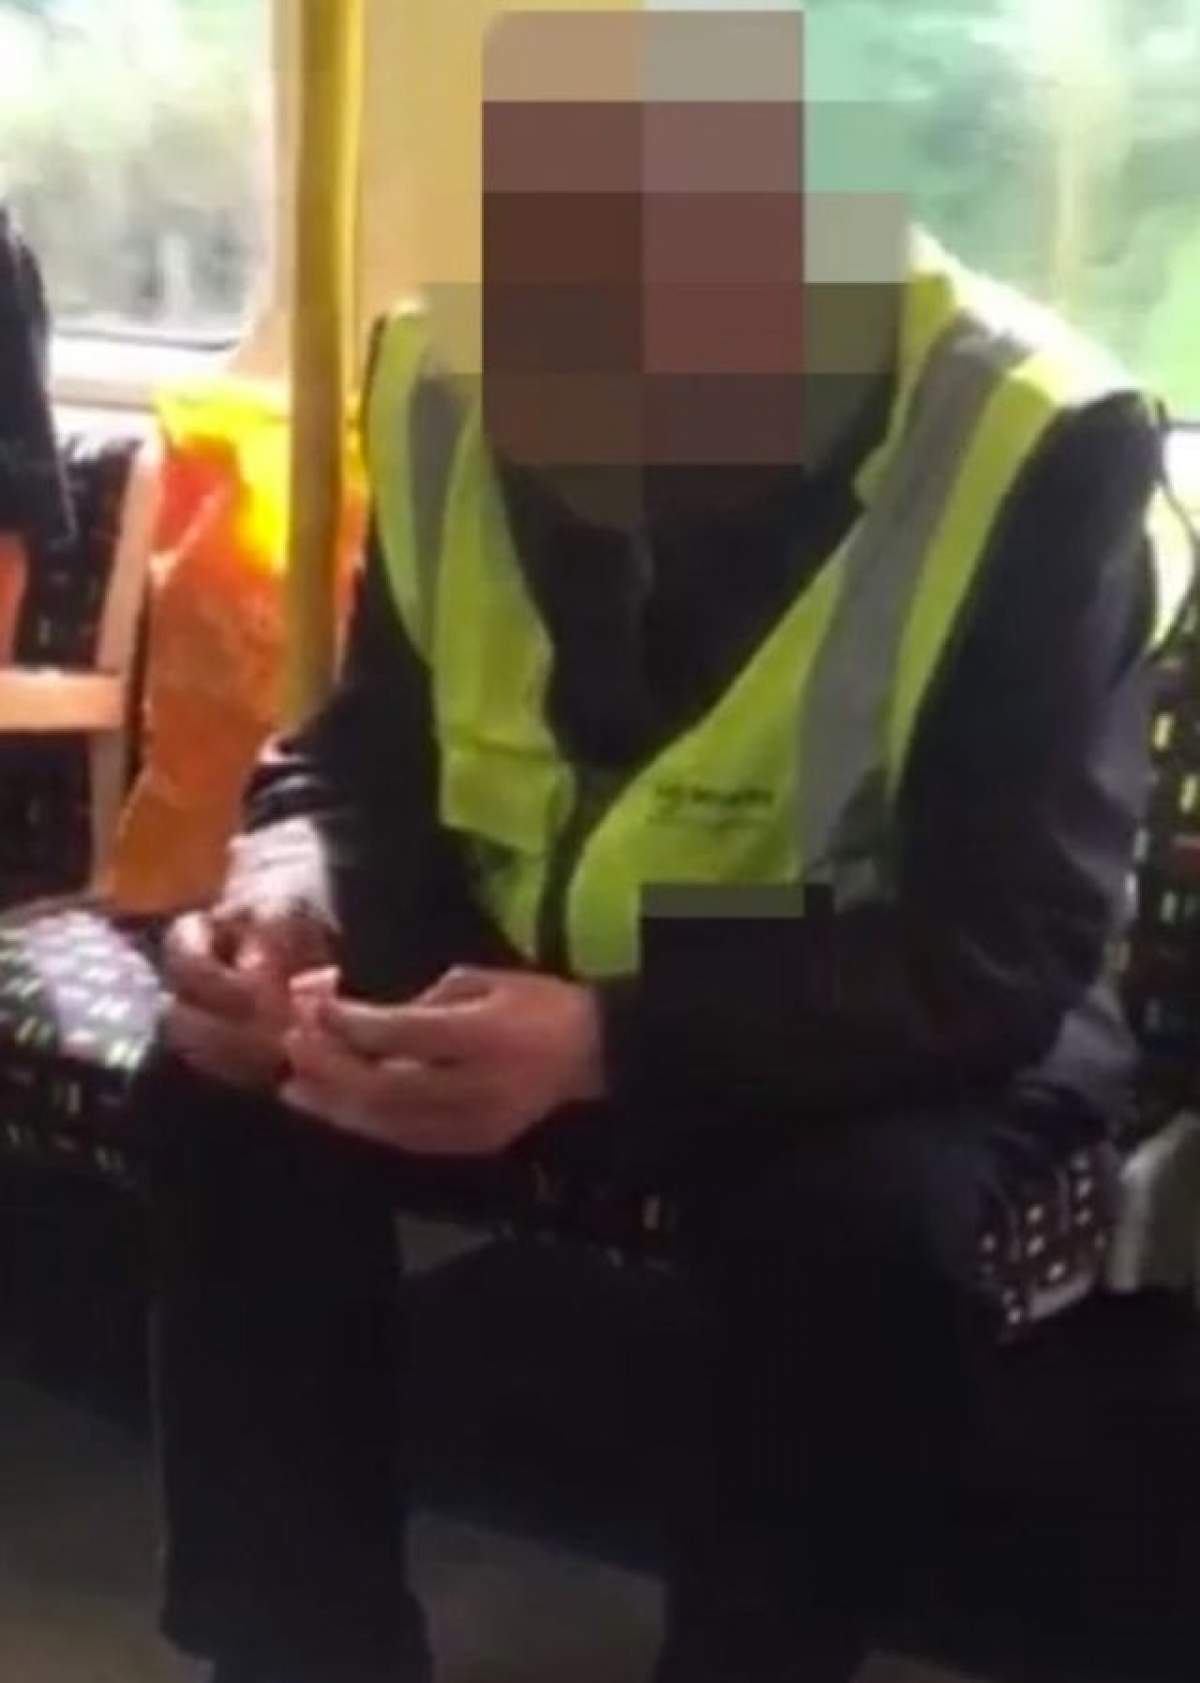 VIDEO / Momentul care o să îți întoarcă stomacul pe dos! Un bărbat a scos în tren un cuțit și a început să facă un lucru șocant cu el